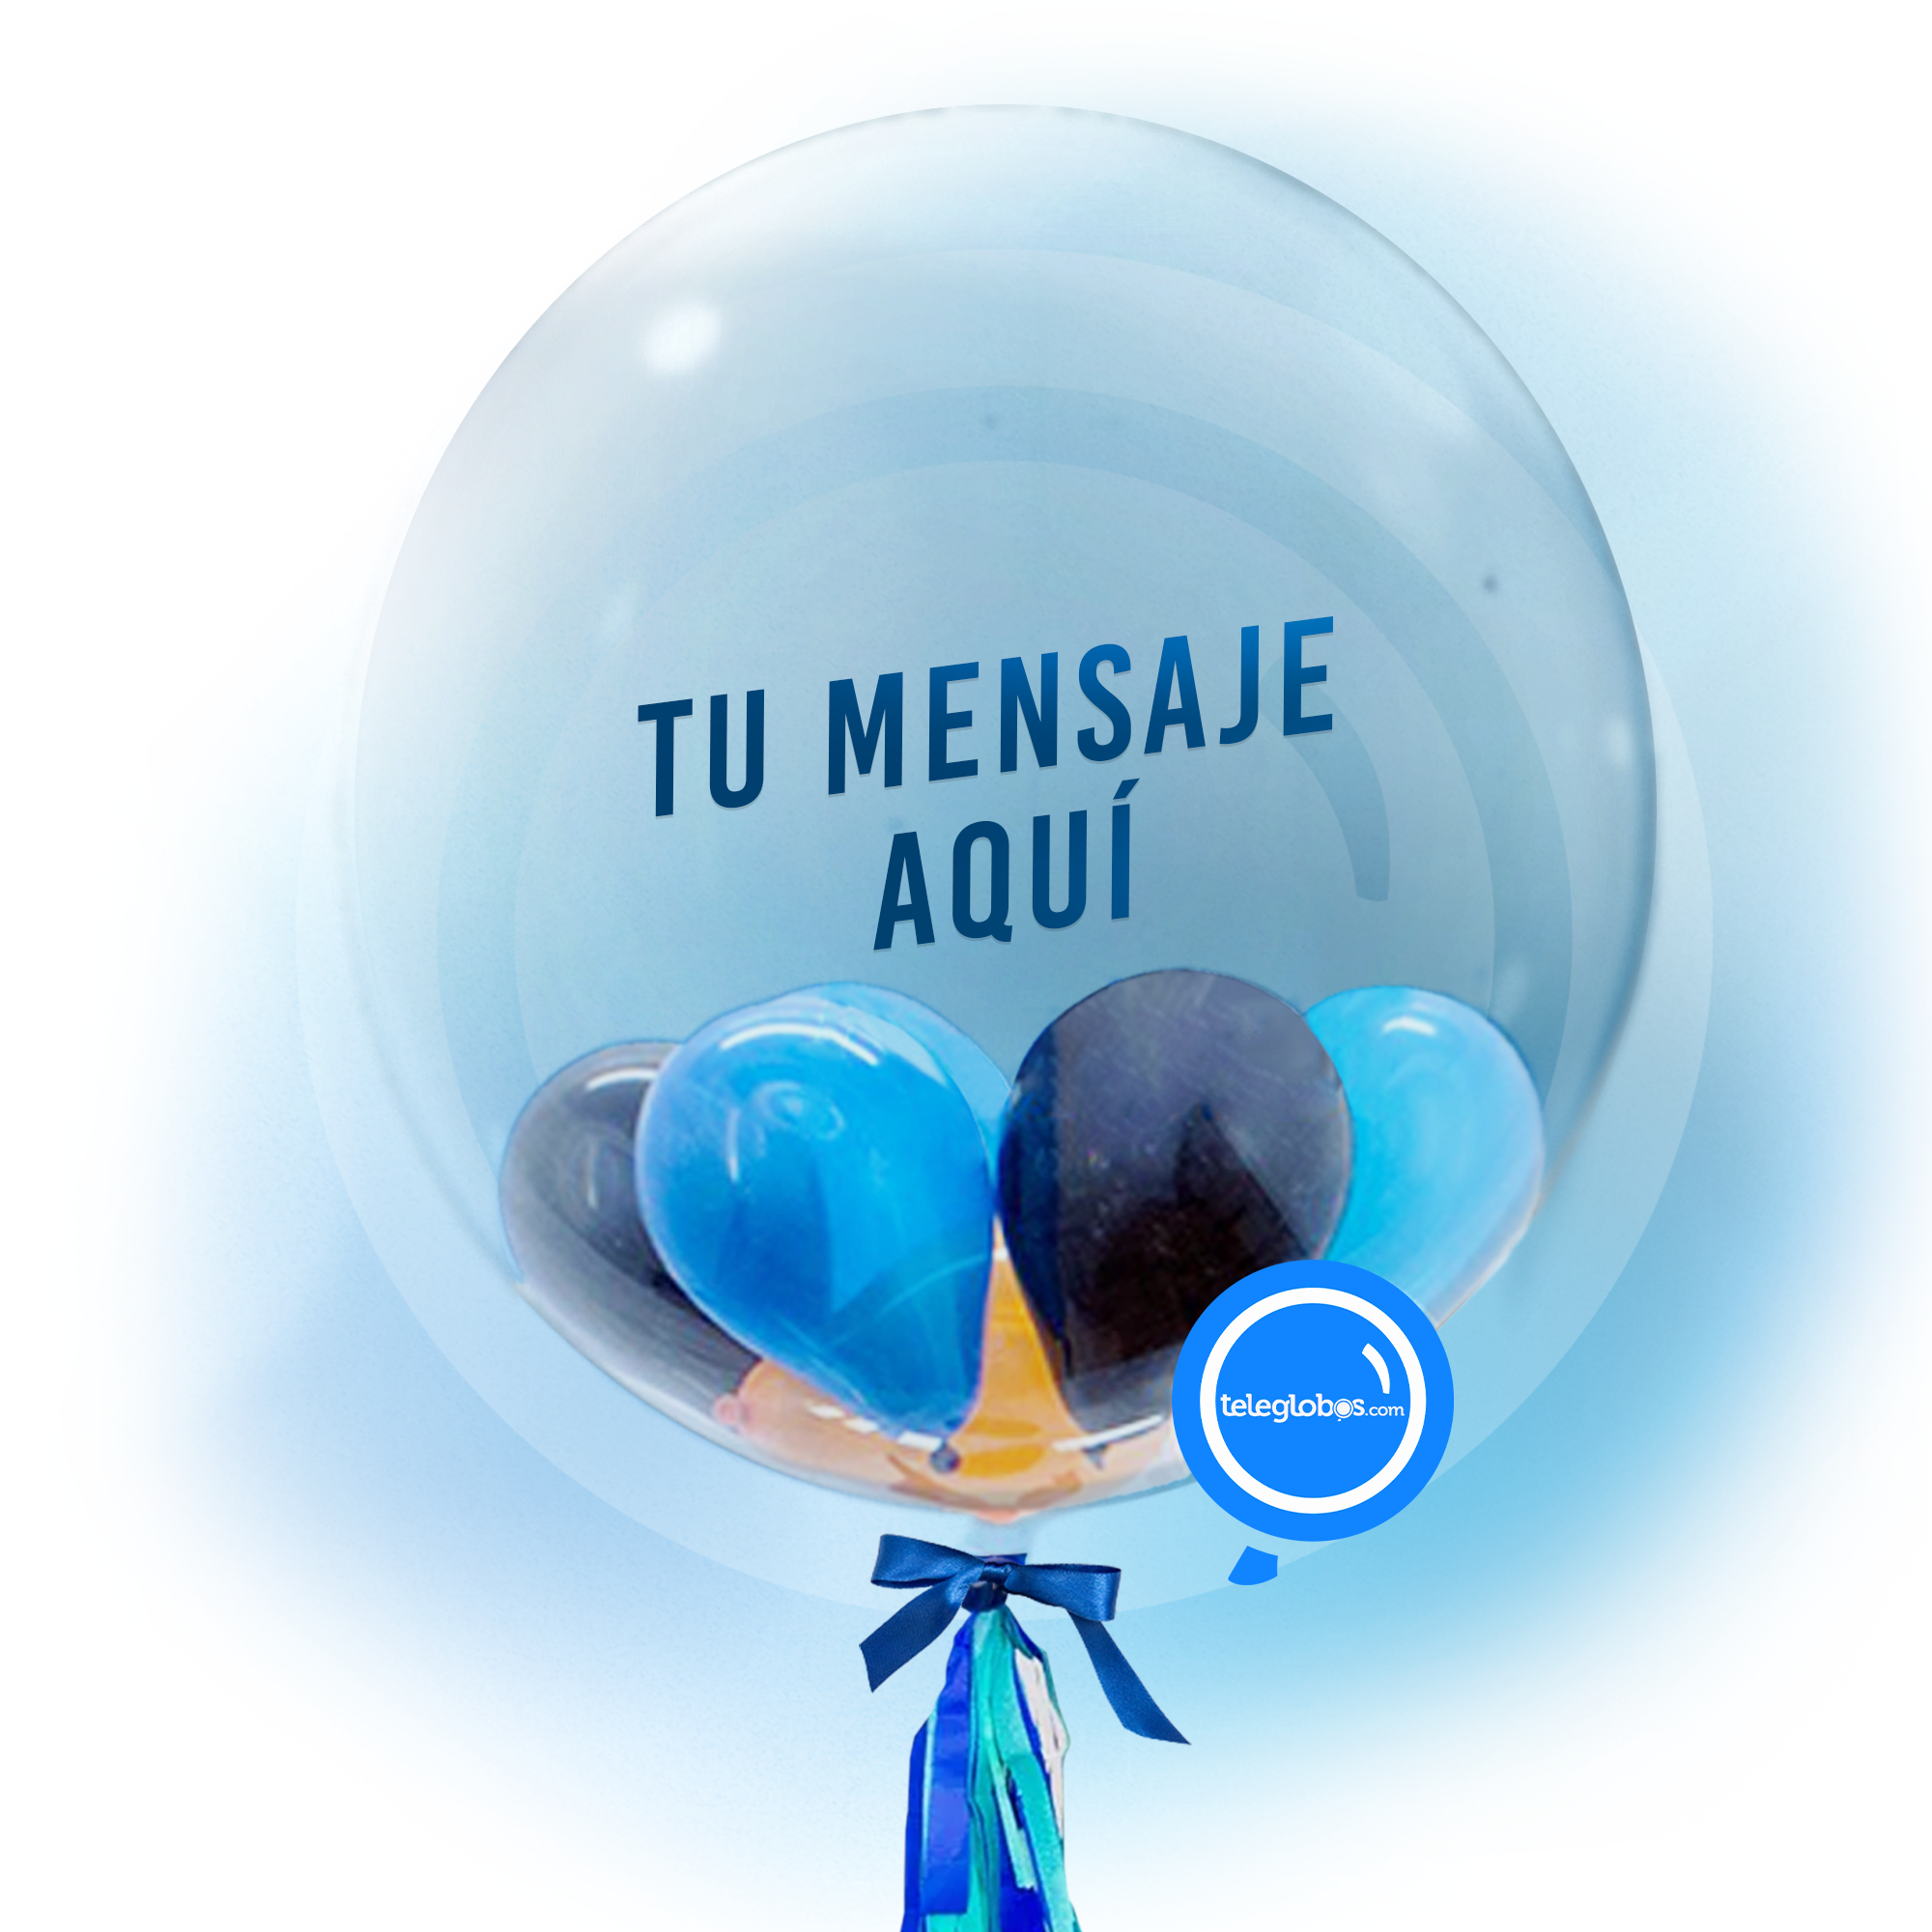 Burbuja con helio personalizada -Mientras más velas- | Globos y Regalos Teleglobos.com.mx globos con helio transparentes globos burbuja globos para hombre globos varoniles globos para oficina